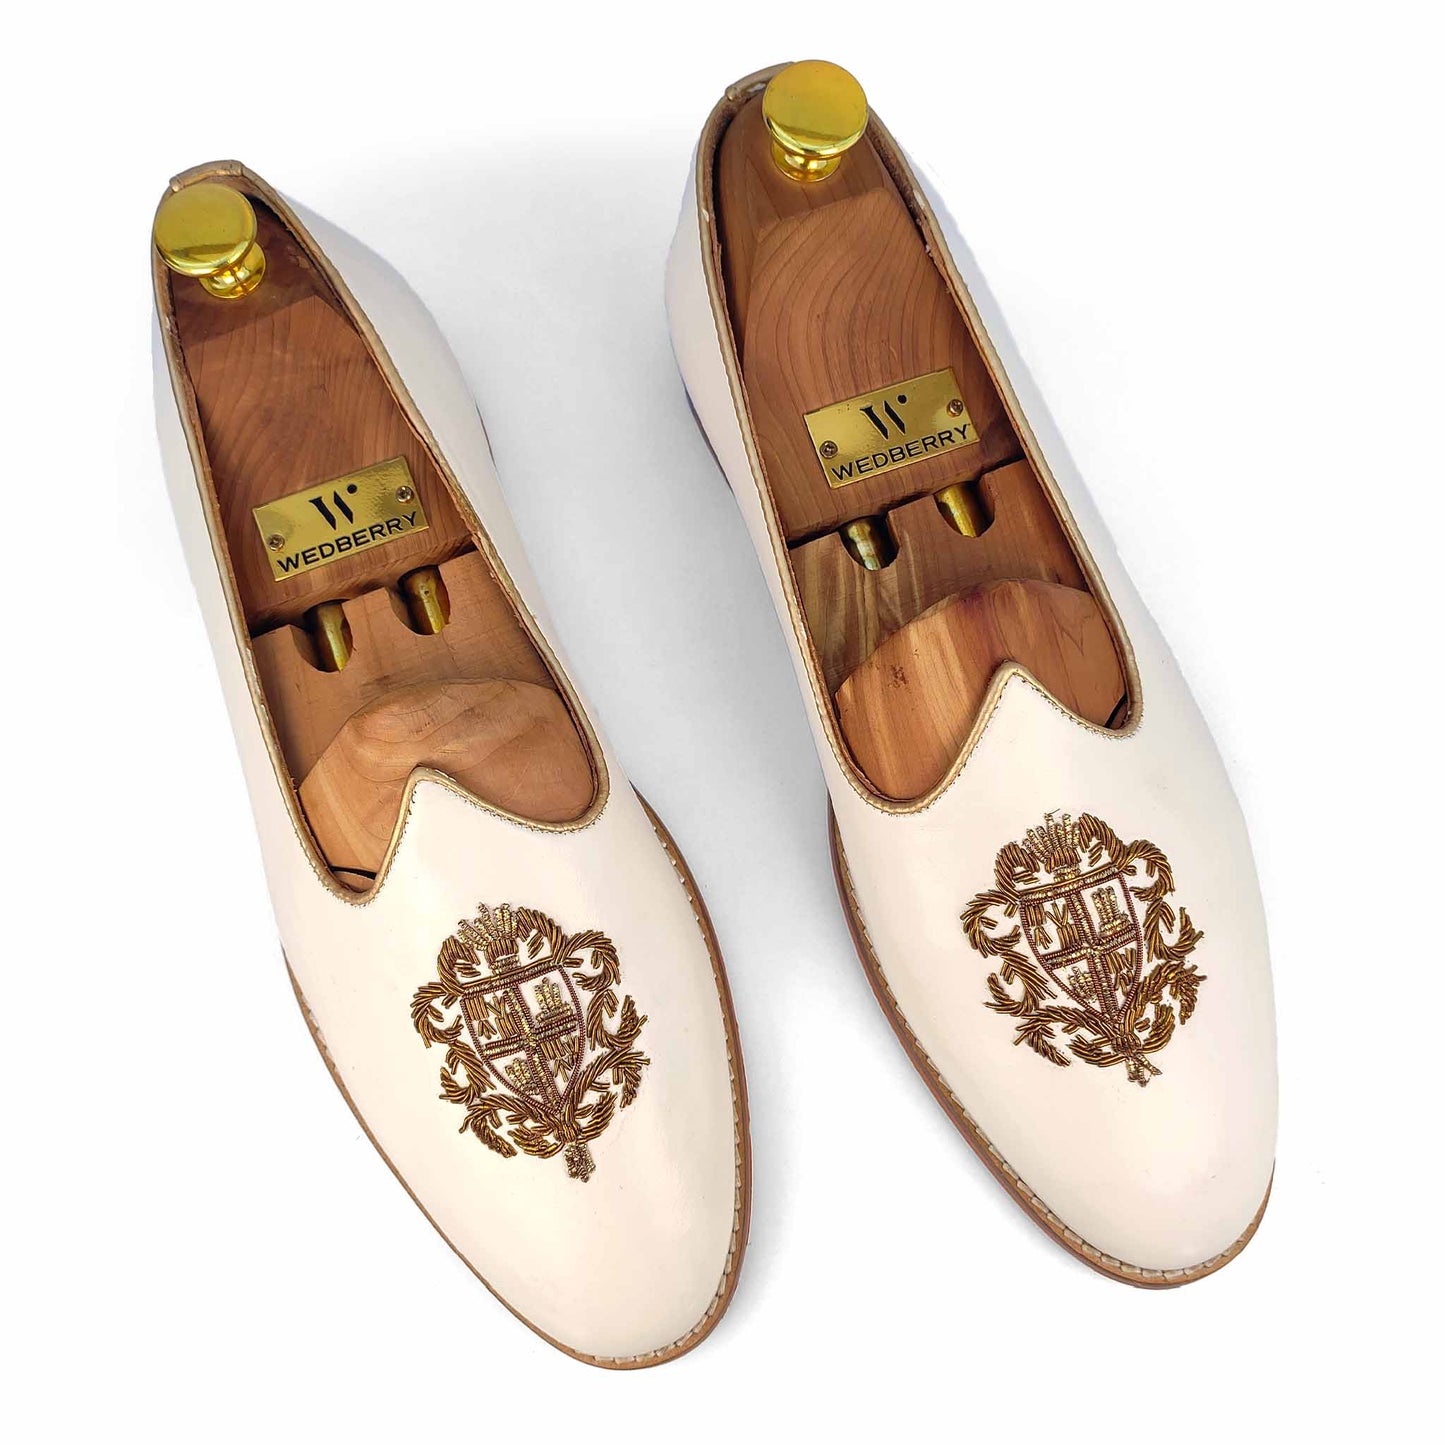 White Zardozi Handwork Wedding Ethnic Party Shoes Loafer for Men